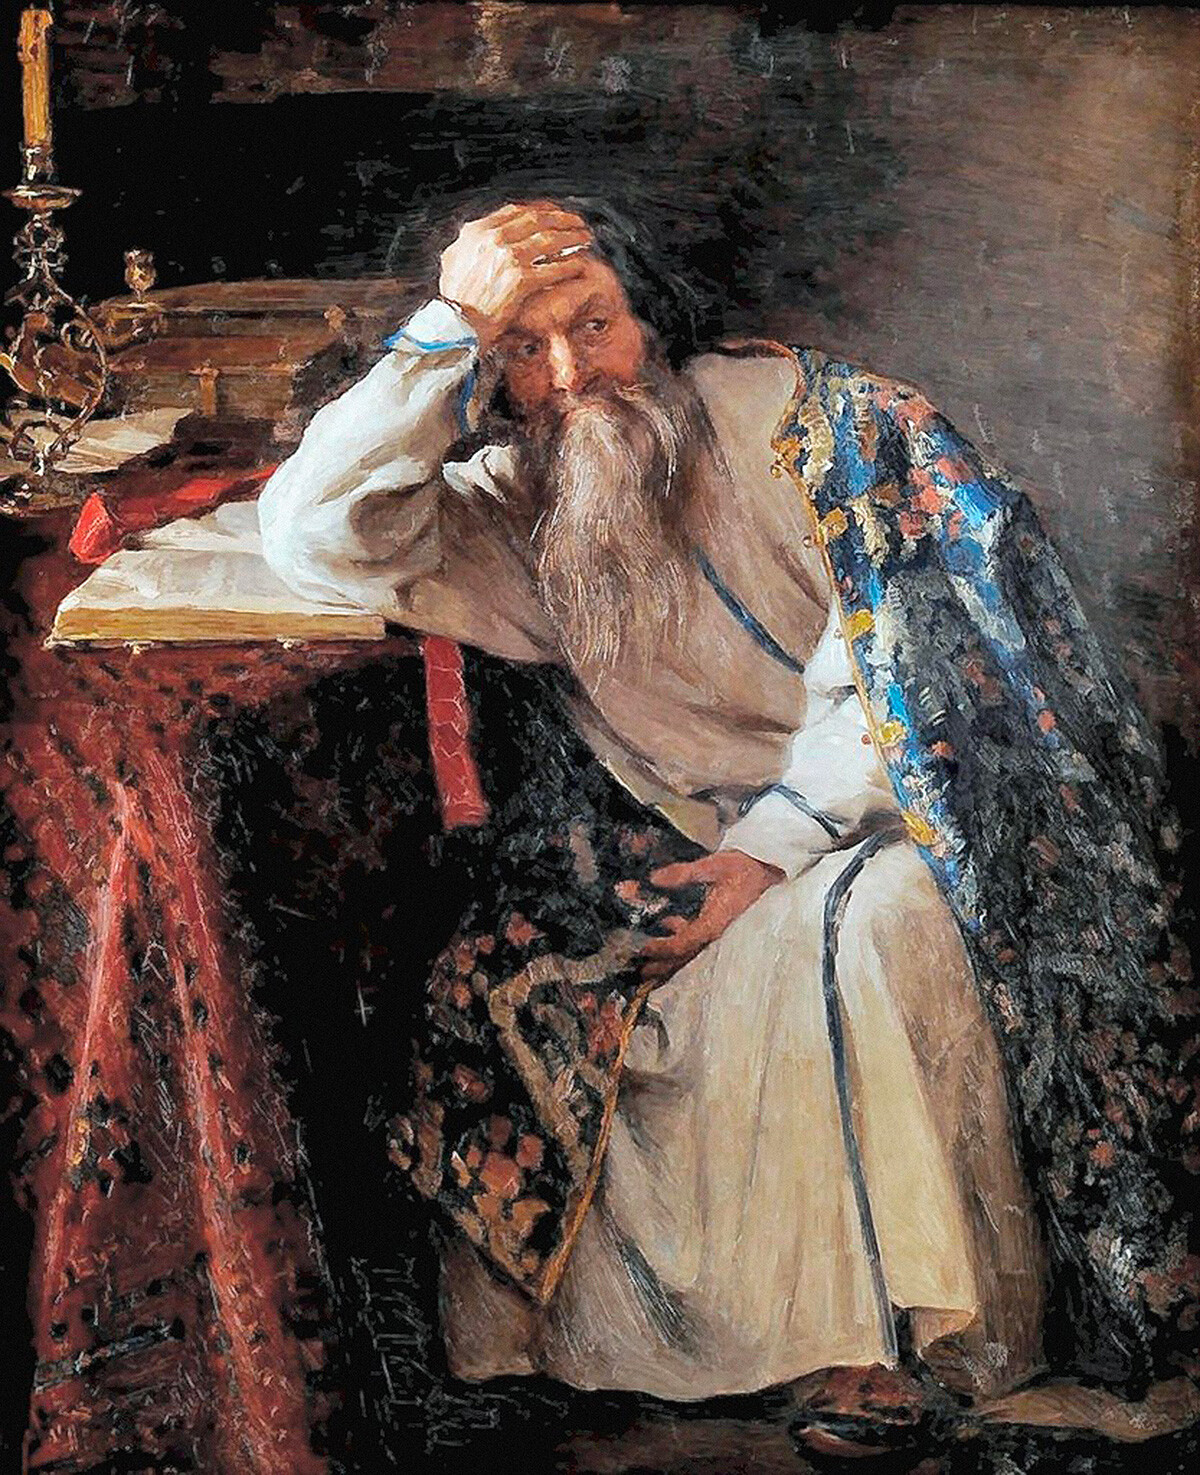  Ivan The Terrible by Klavdiy Lebedev